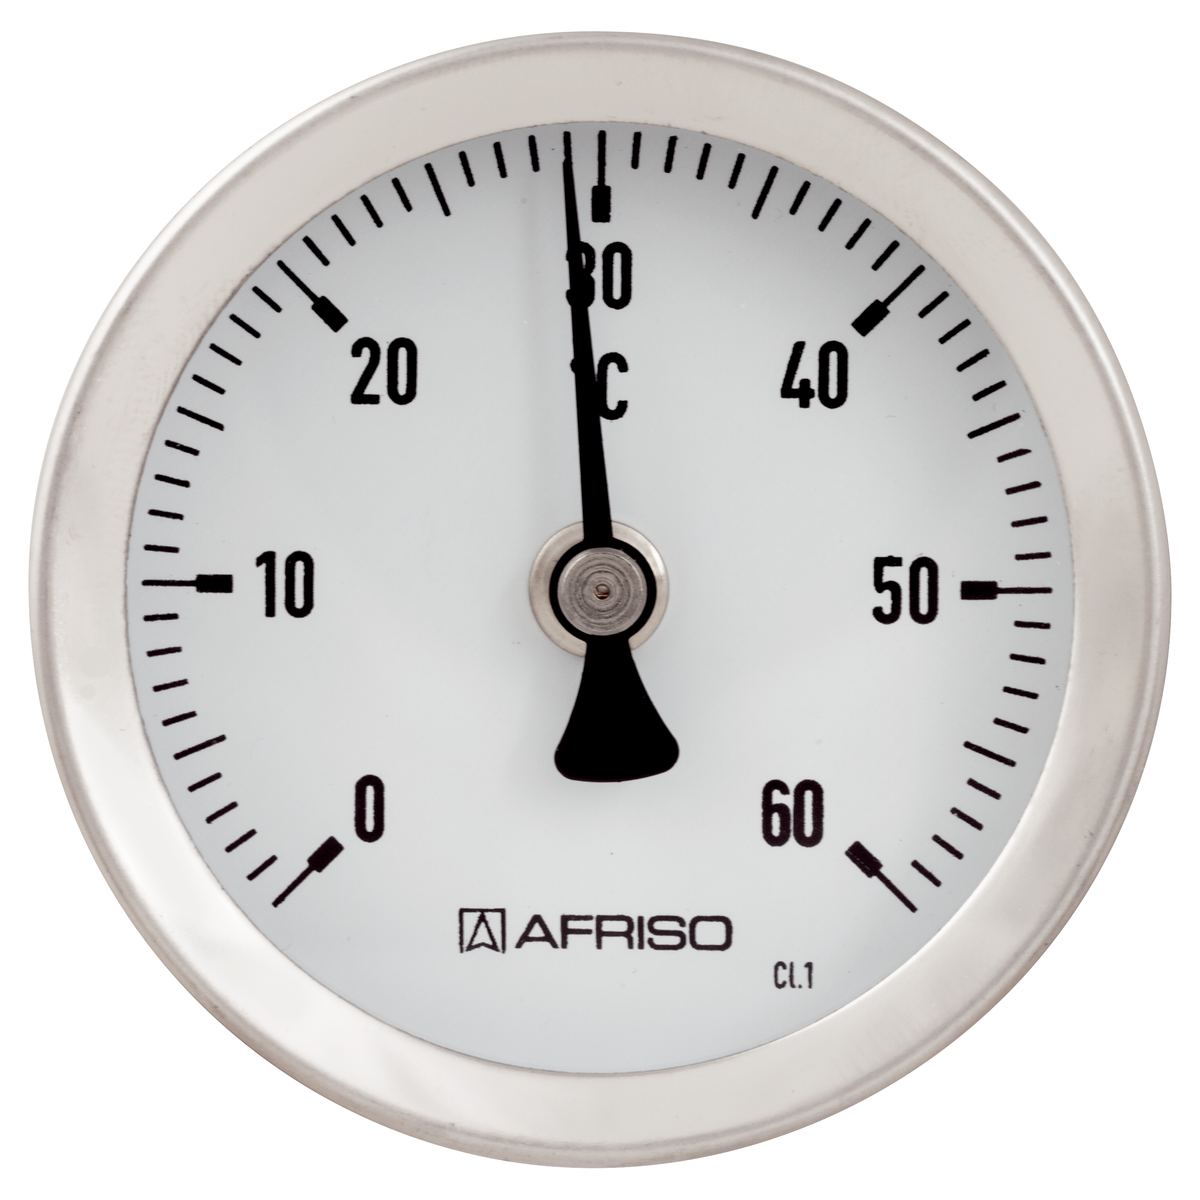 AFRISO Bimetall-Zeigerthermometer 0-120 °C d = 80mm Kunststoffgehäuse mit Fühle 